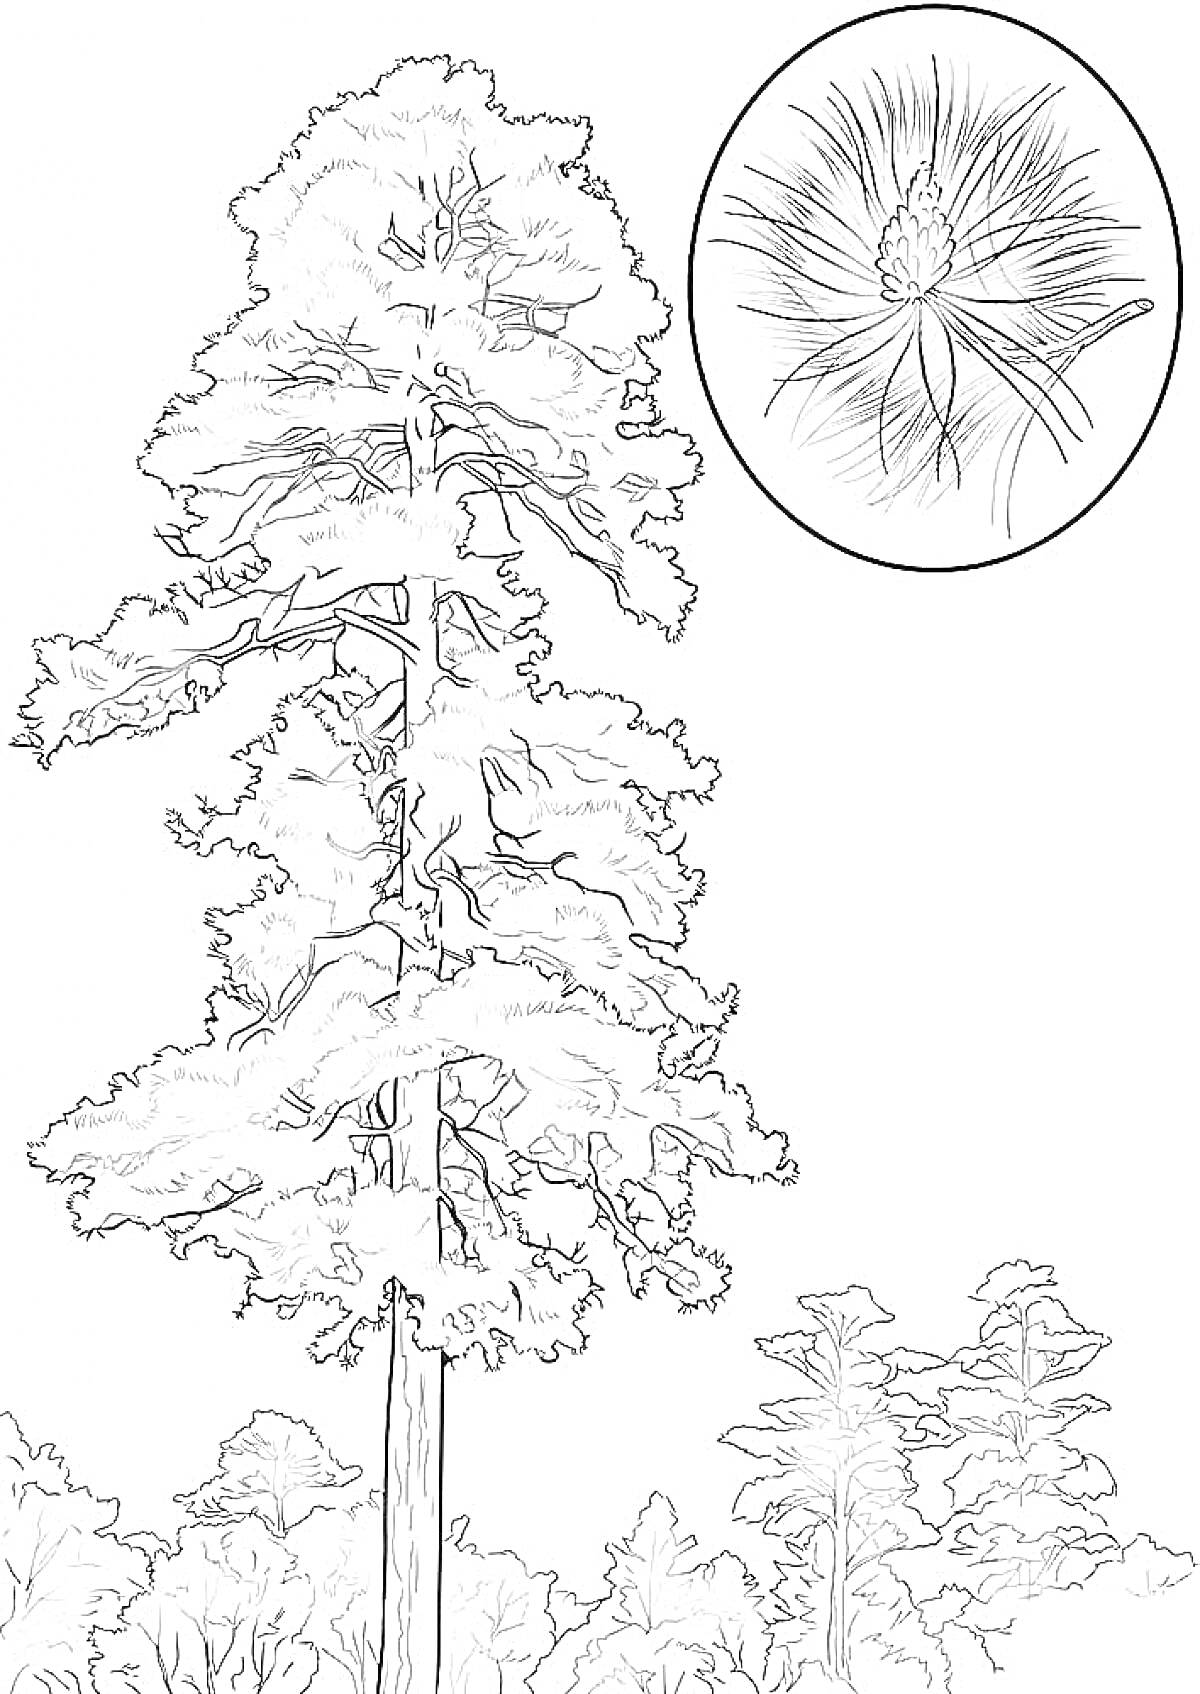 Ветвистая сосна крупным планом с видимым окружением и увеличенным изображением сосновой иголки